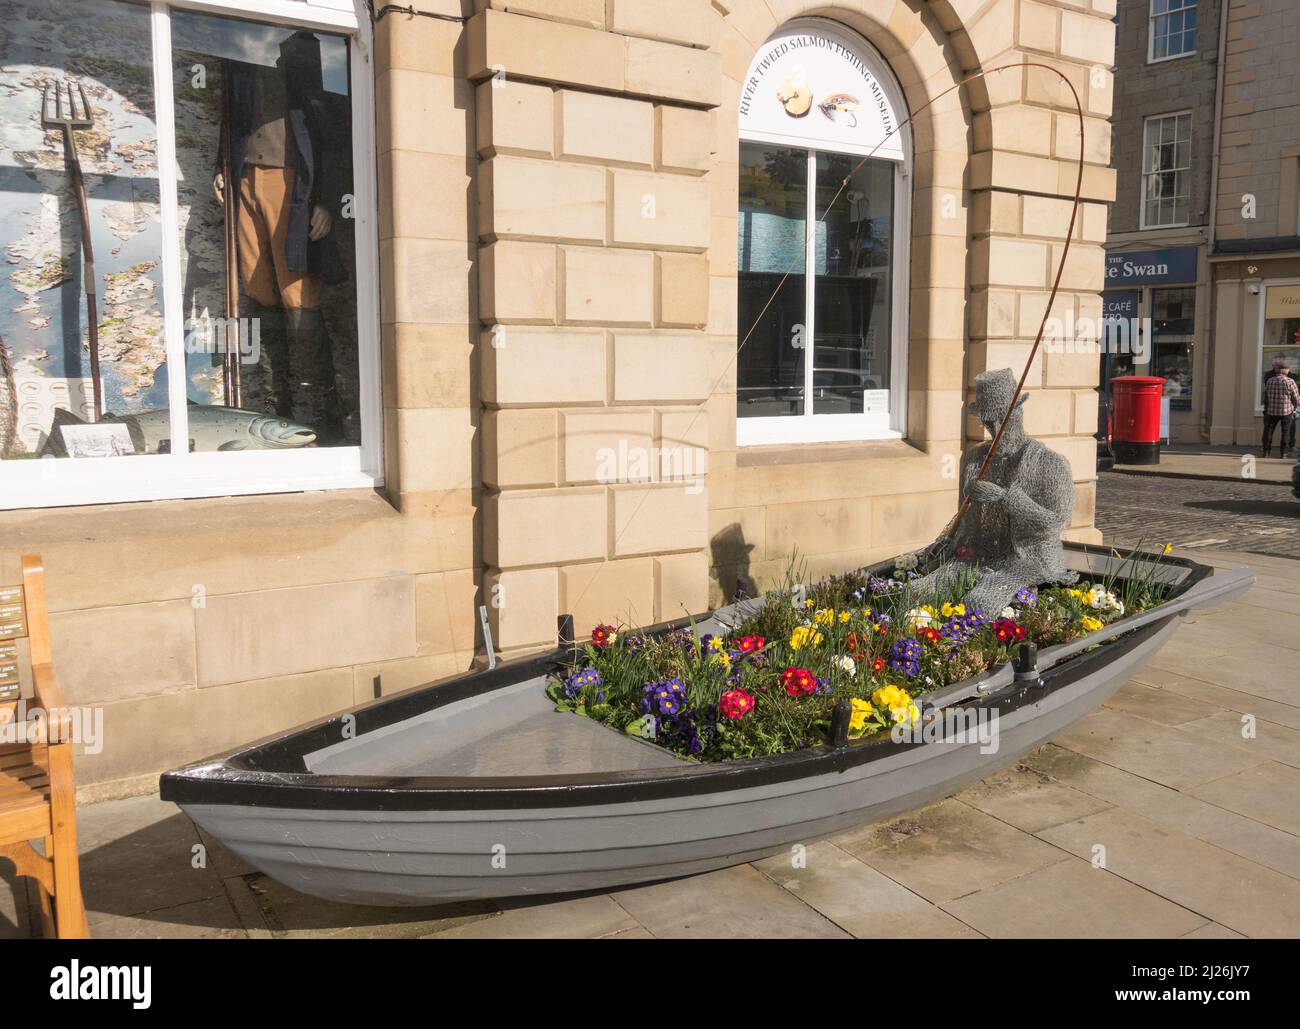 Eine Skulptur einer Person, die in einem Ruderboot vor dem River Tweed Museum of Lachs Fishing in Kelso Town Hall, Scottish Borders, Schottland, angeln kann. Stockfoto